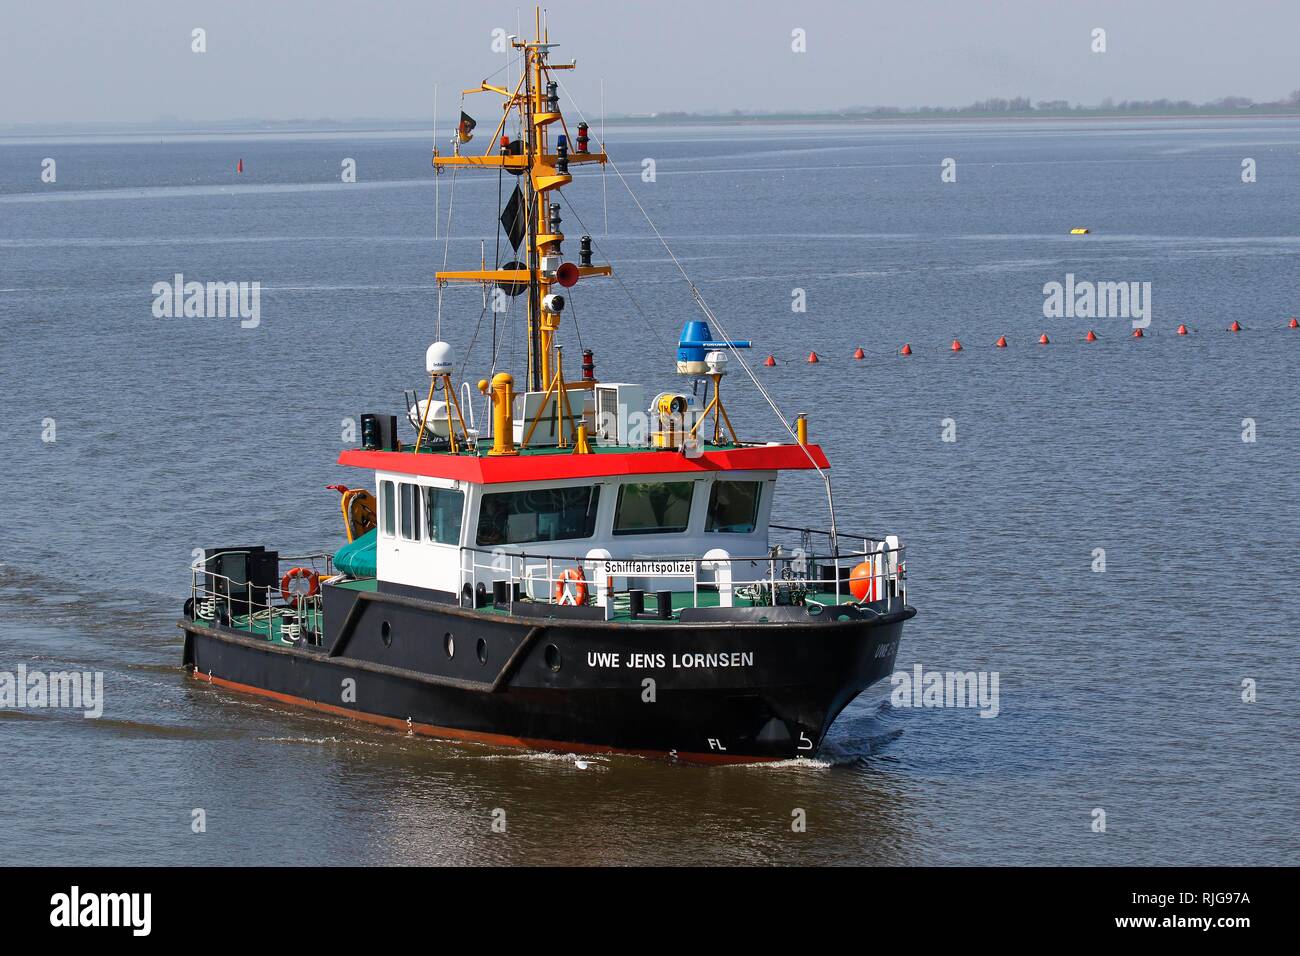 Umfrage Schiff, maritime Polizei Uwe Jens Lornsen, Nordseeküste, Schleswig-Holstein, Deutschland Stockfoto